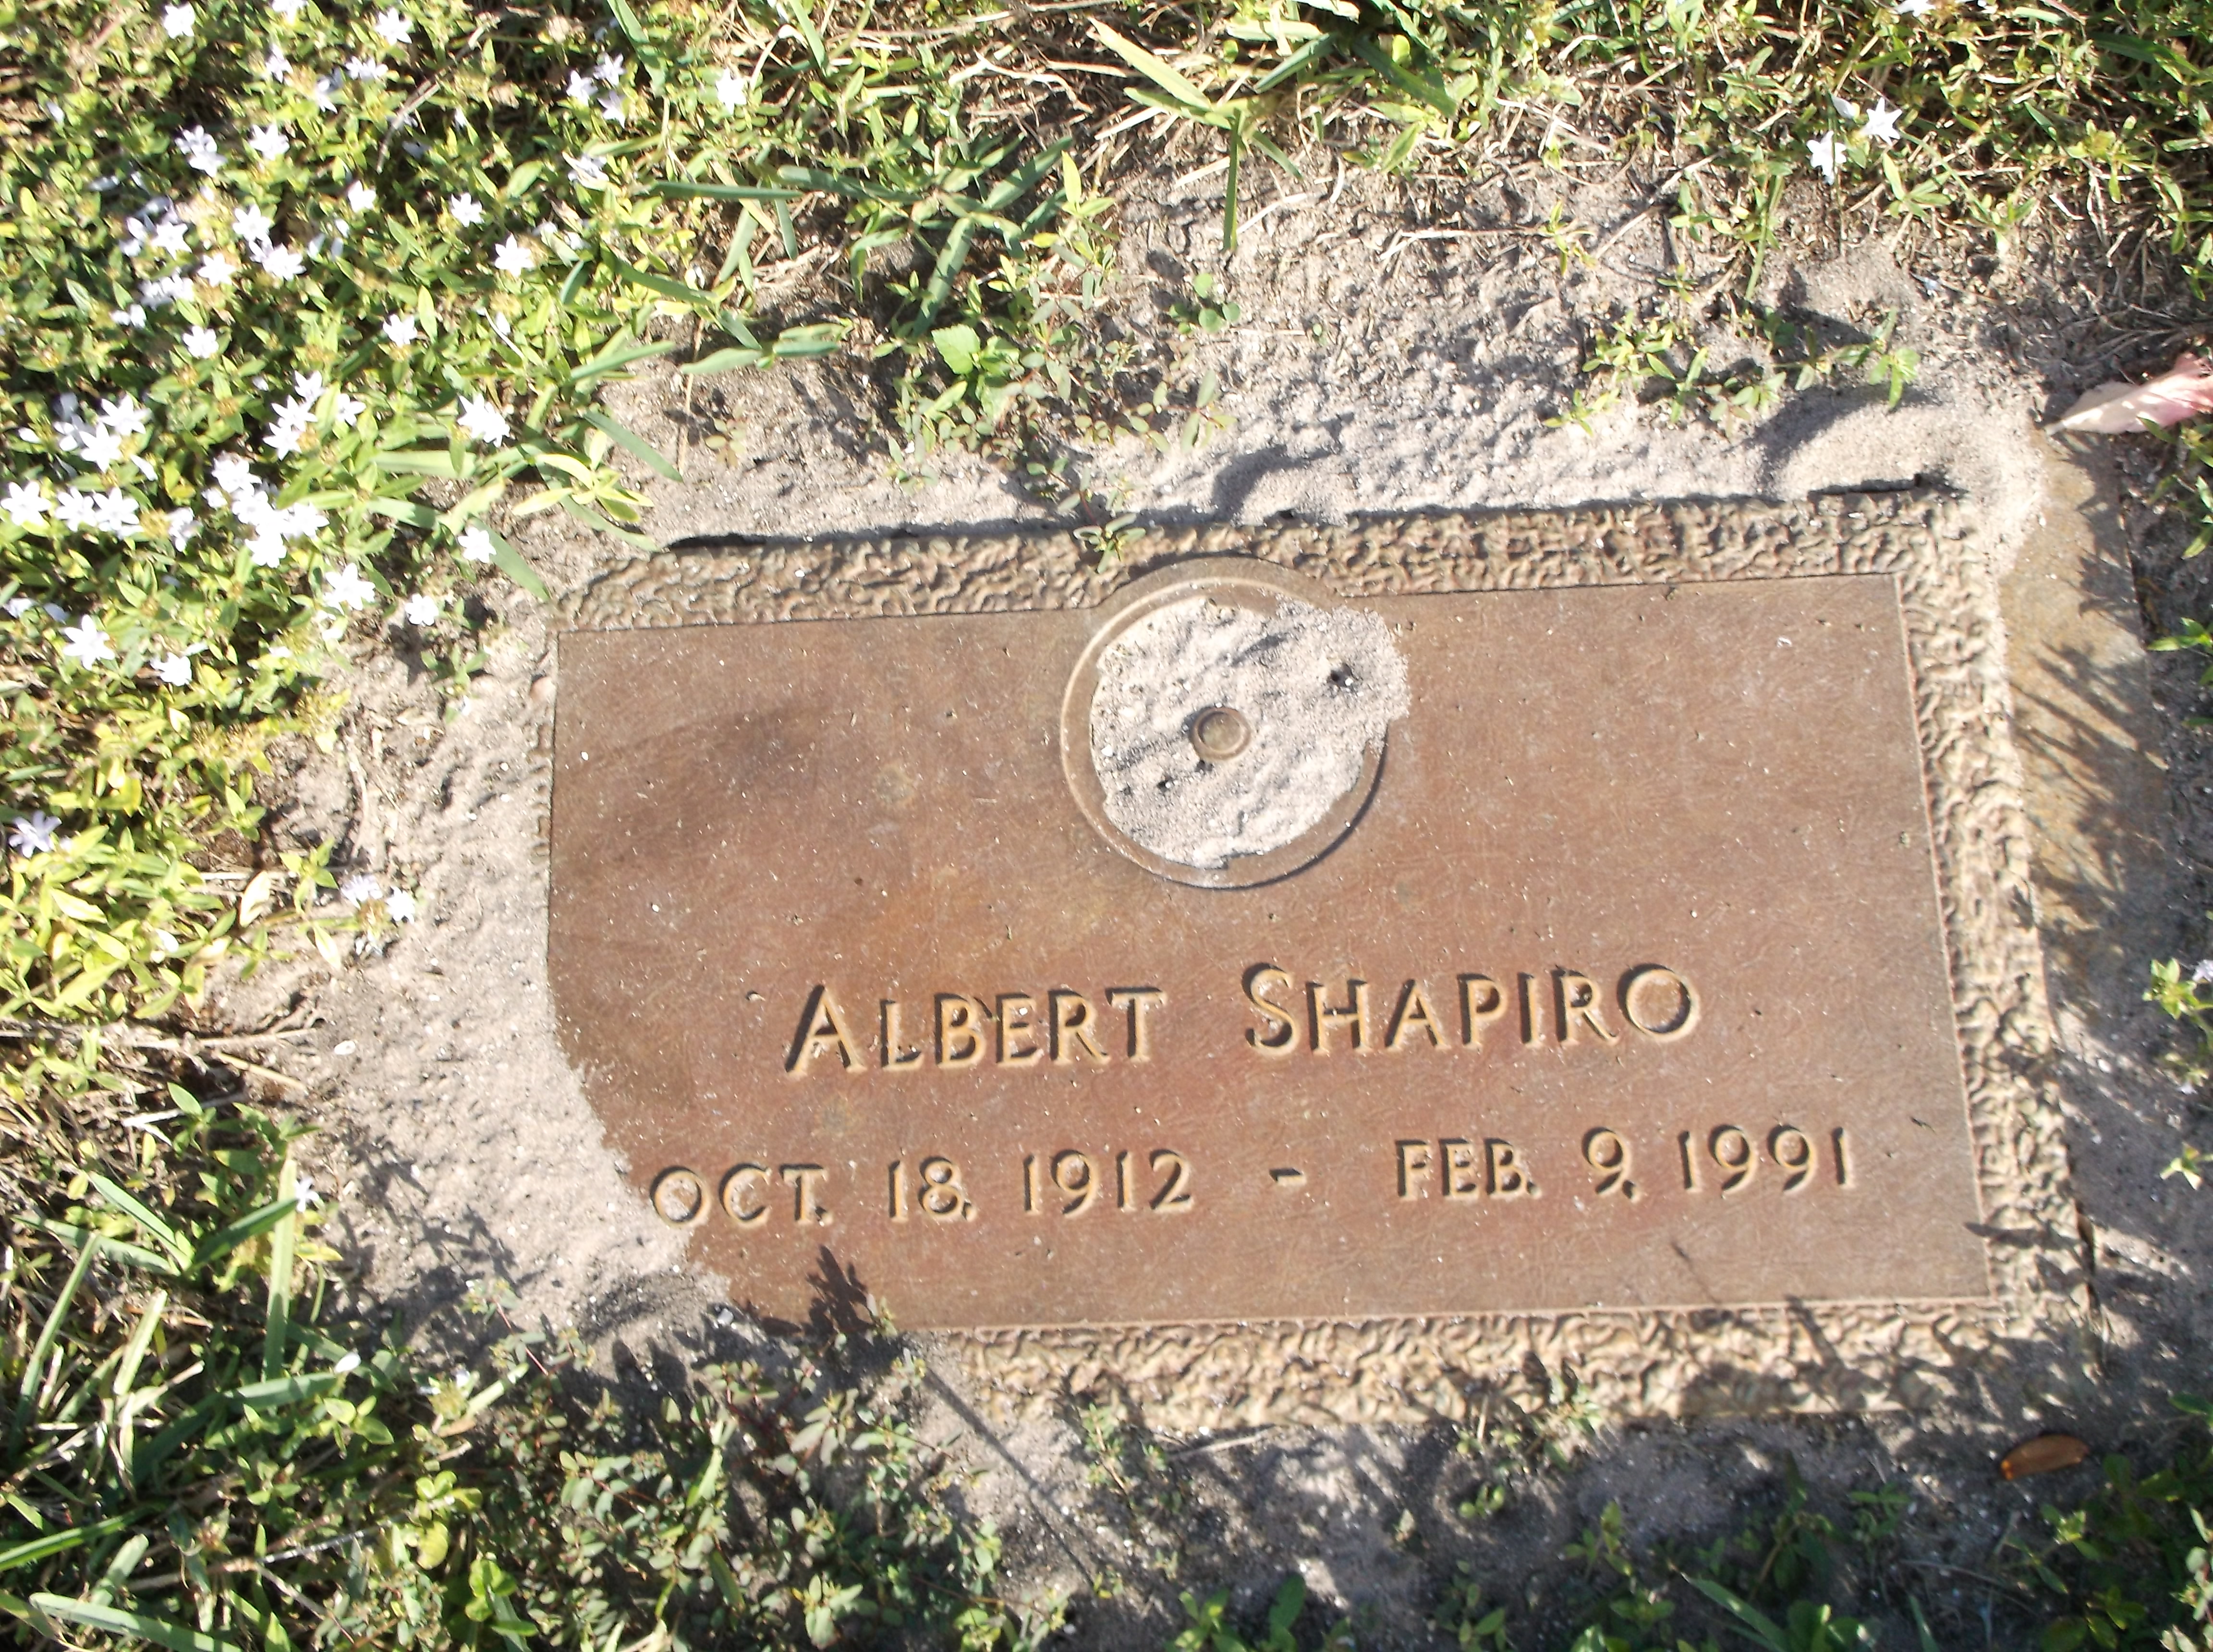 Albert Shapiro